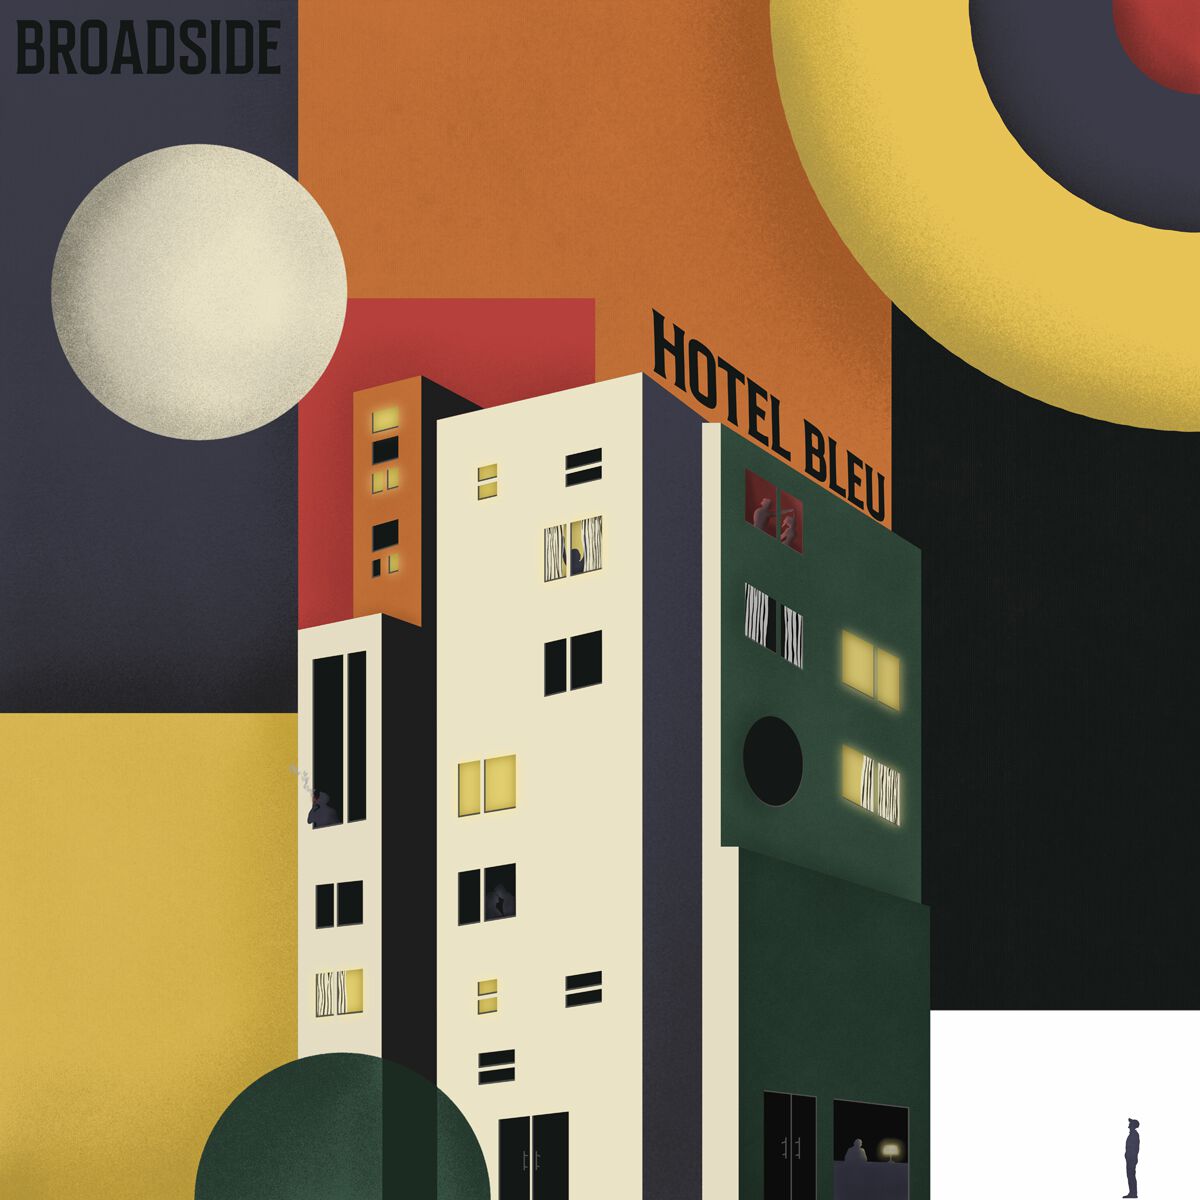 Hotel Bleu von Broadside - CD (Jewelcase)